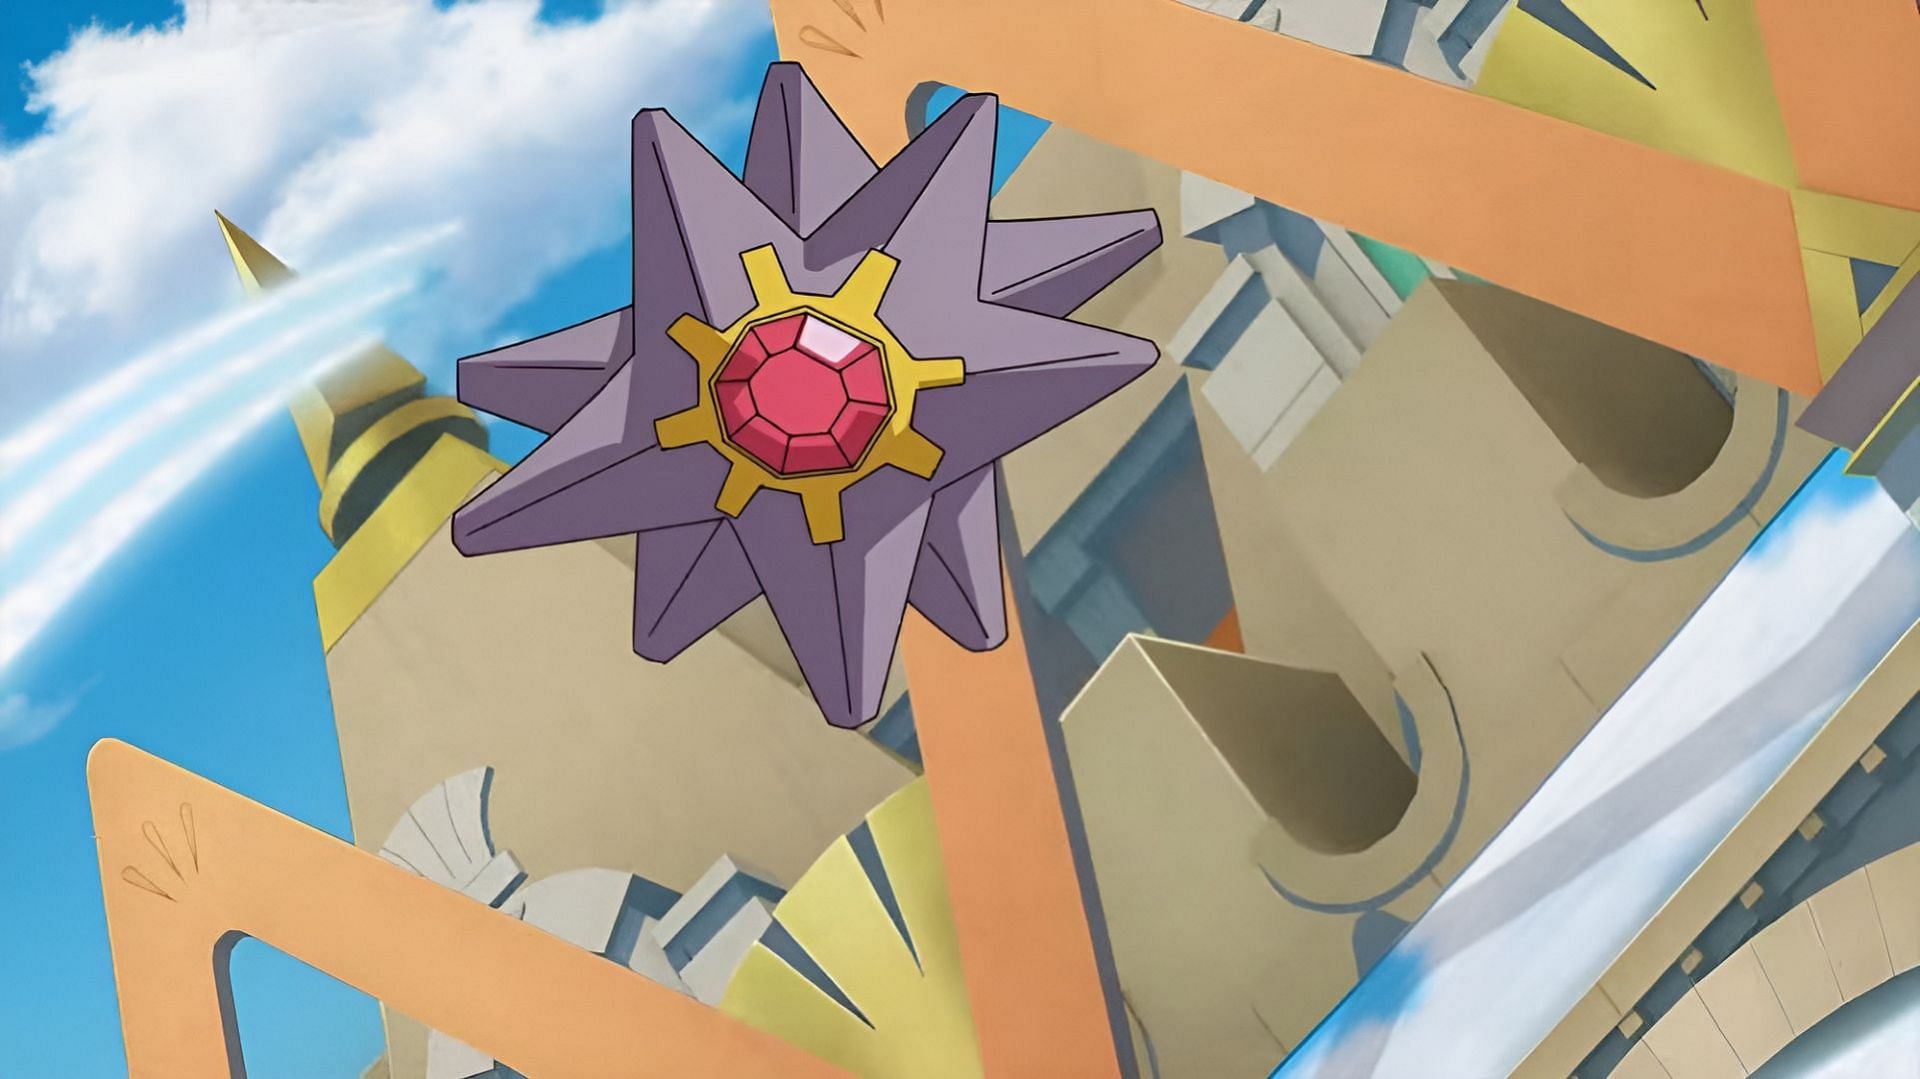 Il design unico di Starmie potrebbe migliorare ulteriormente con la megaevoluzione (immagine tramite The Pokemon Company)